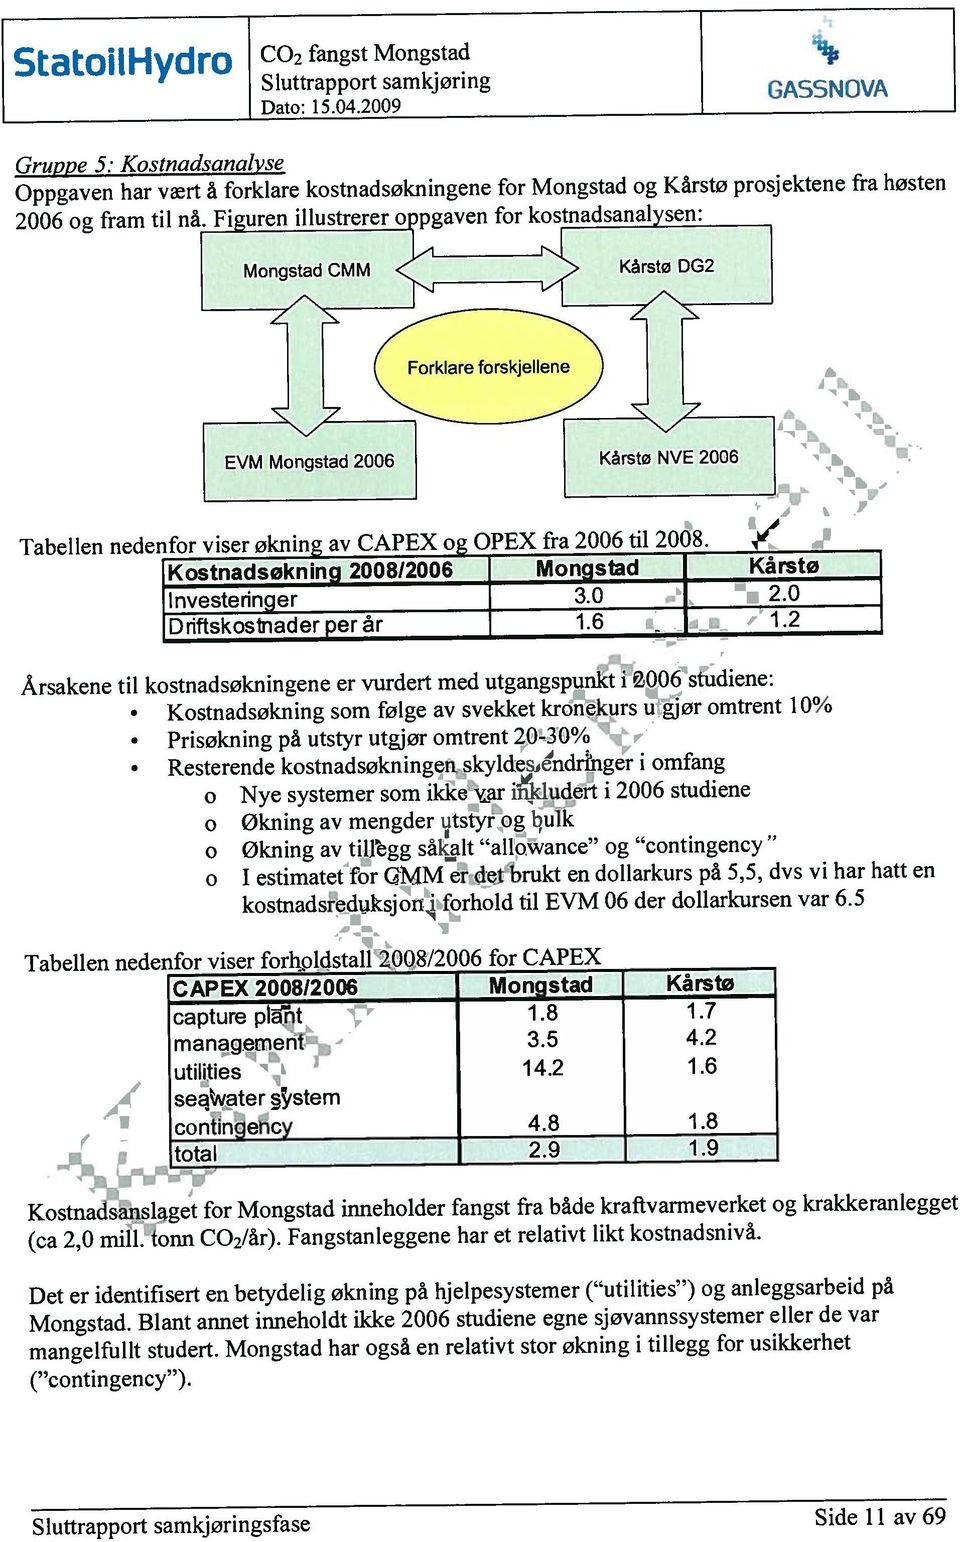 Årsakene til kostnadsøkningene er vurdert med utgangspunkt i 2006 studiene: Tabellen nedenfor viser forholdstalf08/2006 for CAPEX Det er identifisert en betydelig økning på hjelpesystemer ( utilities